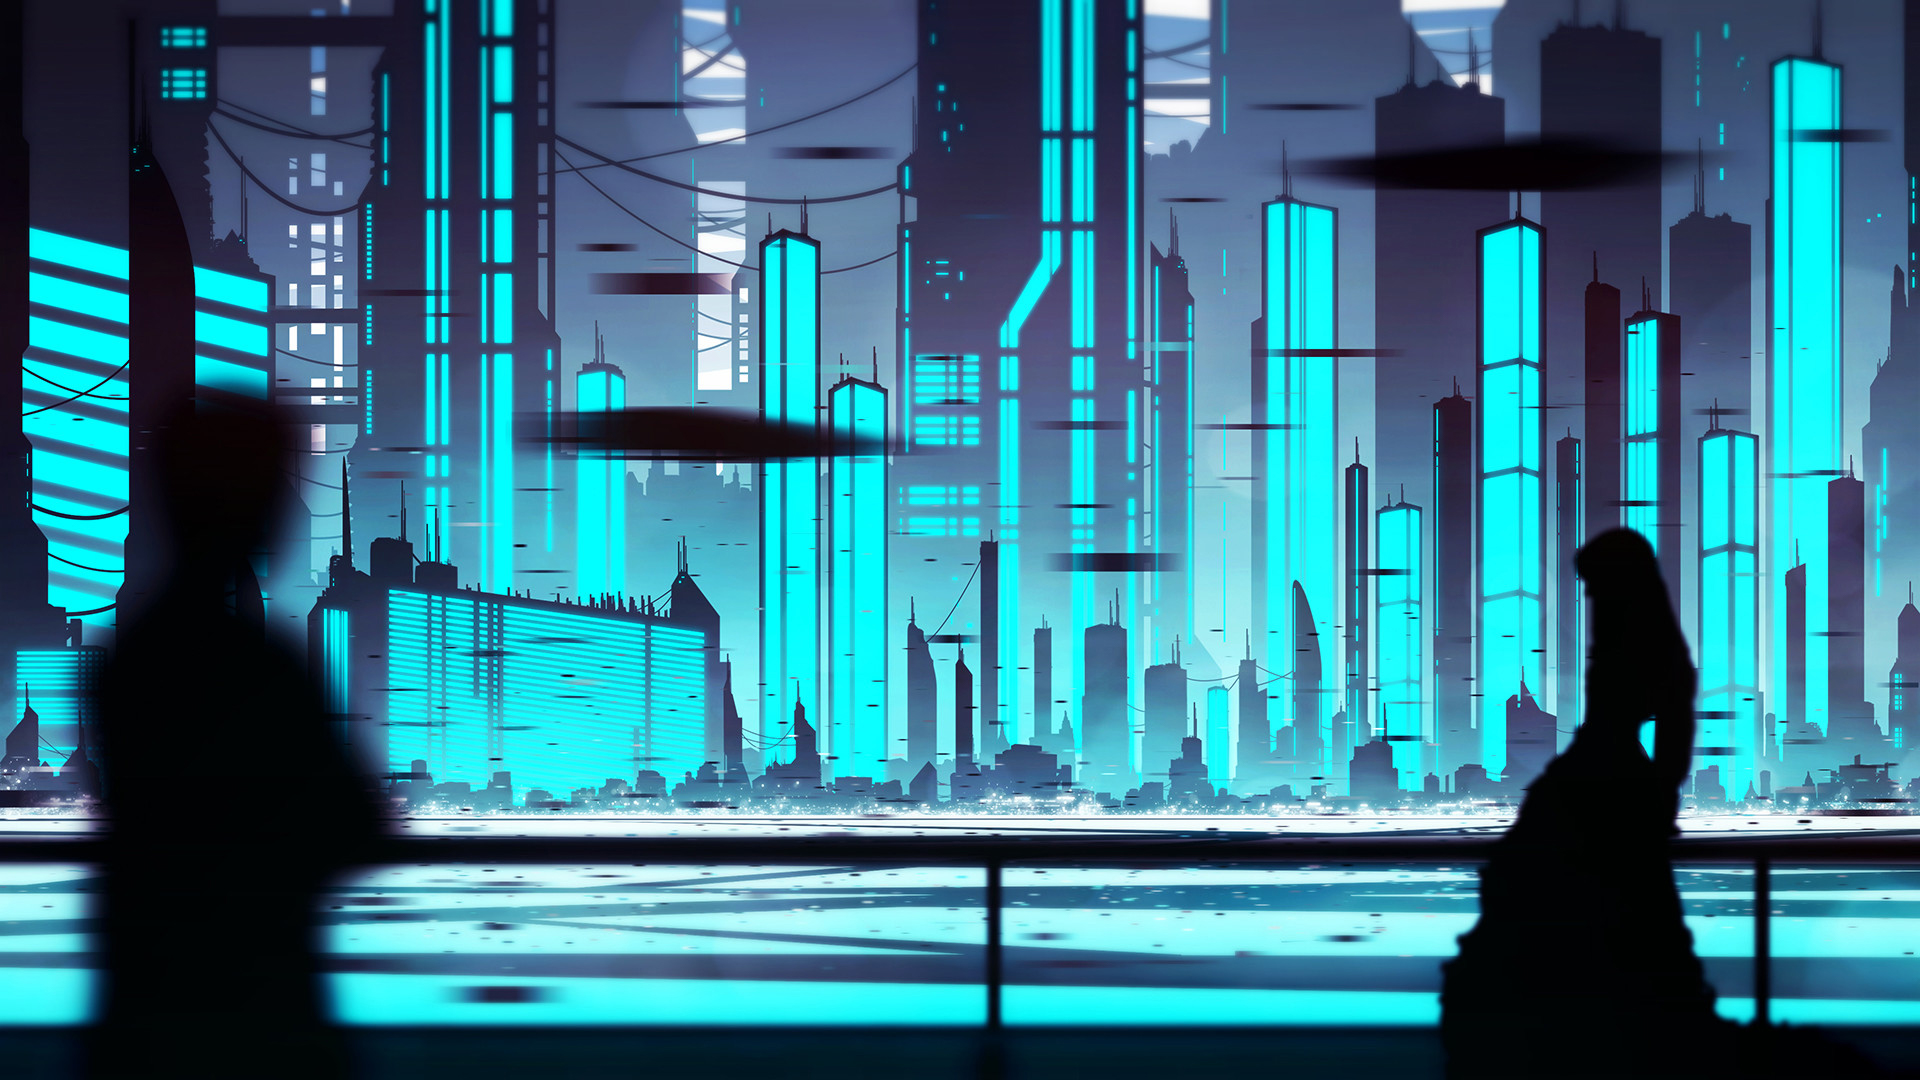 Sci Fi City HD Wallpaper by Michal Kváč